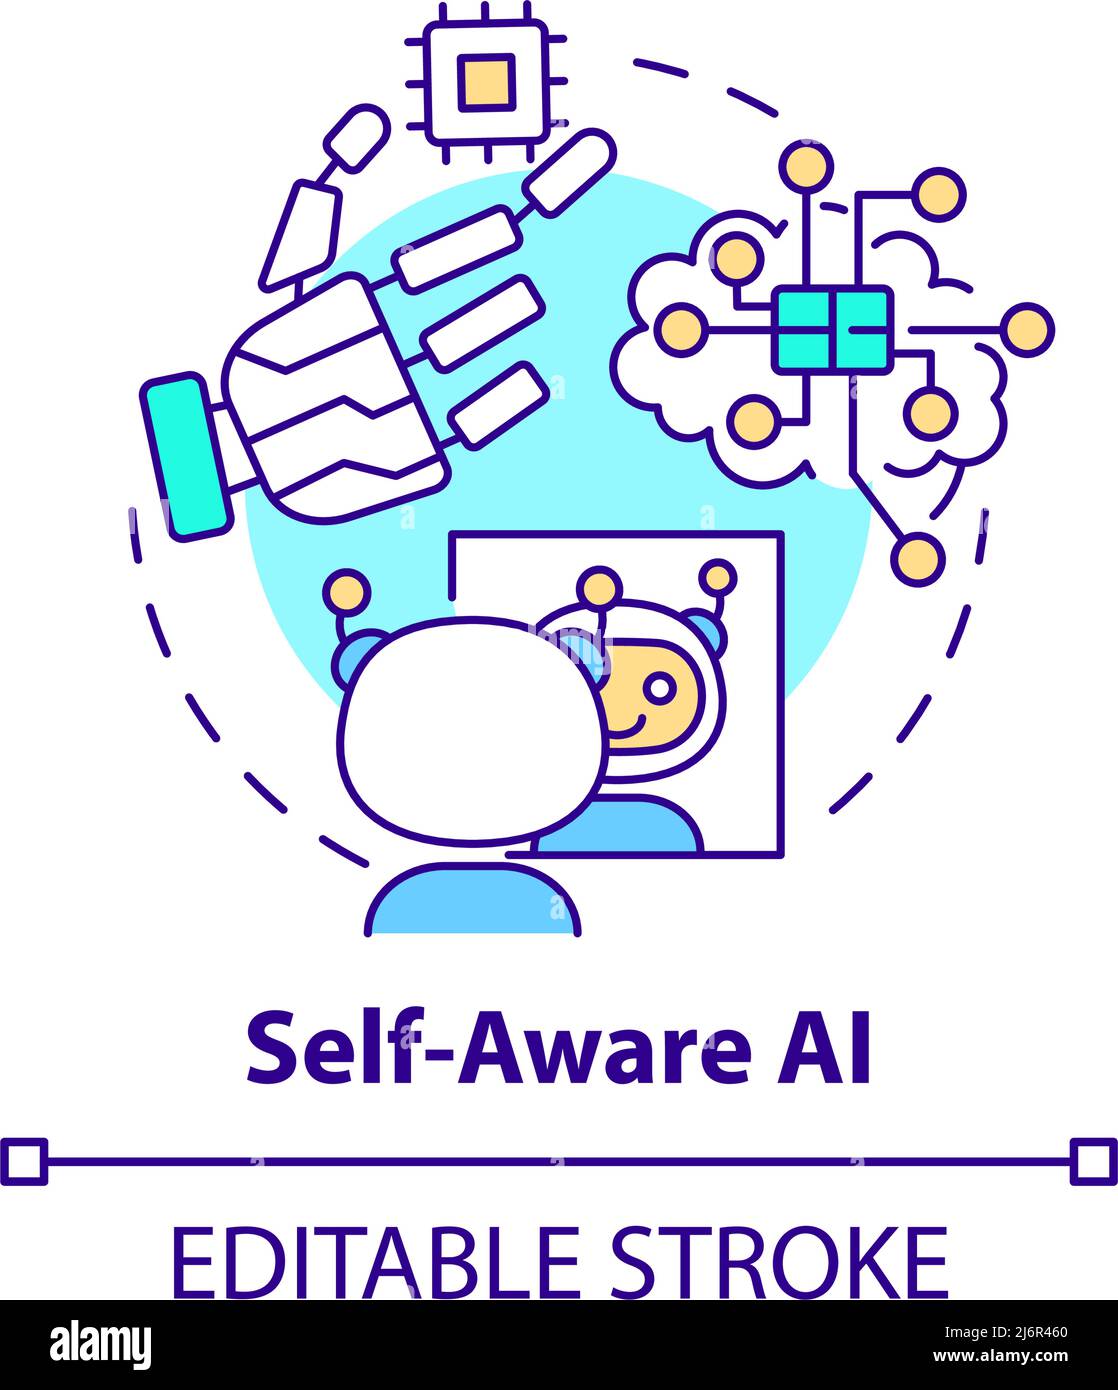 Self aware AI concept icon Stock Vector